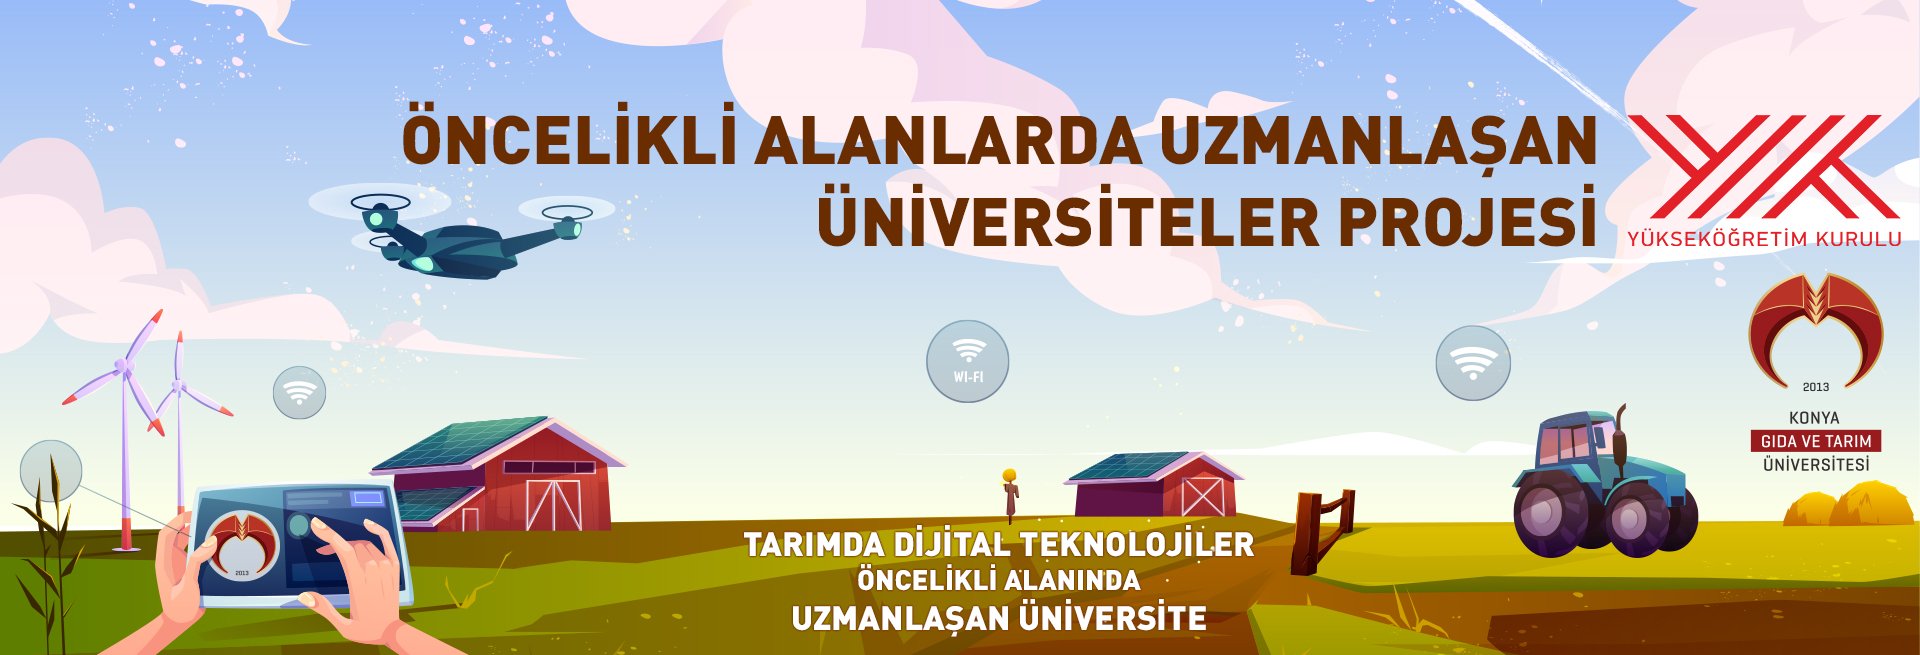 Üniversitemiz YÖK tarafından Tarımda Dijital Teknolojiler Alanında Uzmanlaşan Üniversite Seçildi